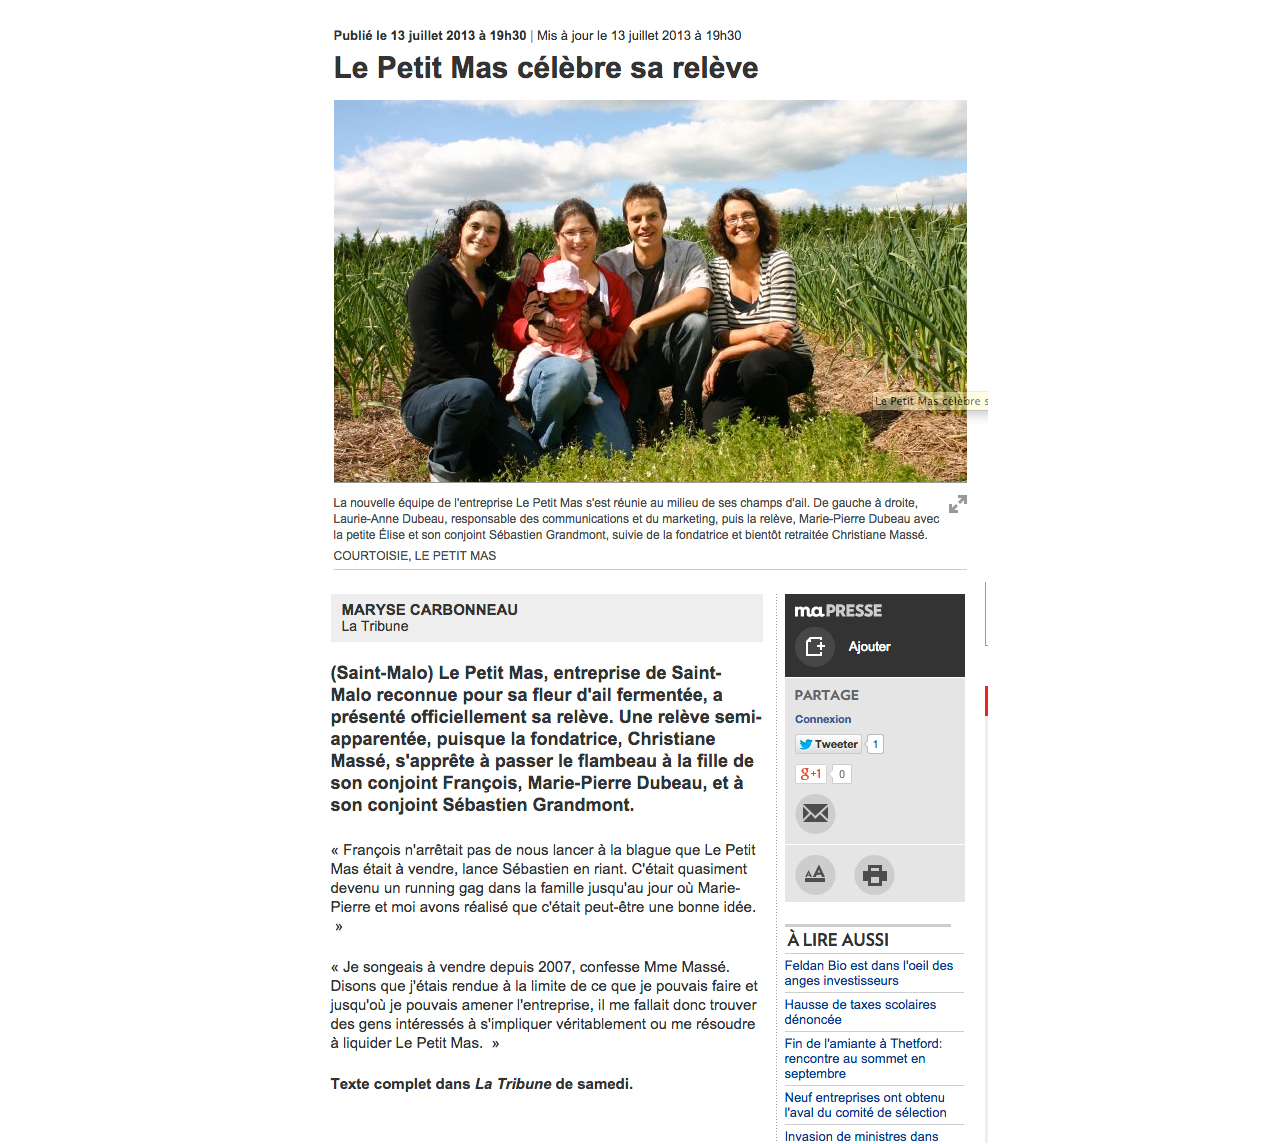 Le Petit Mas -They talk abour our garlic flowers (scapes) - La Tribune